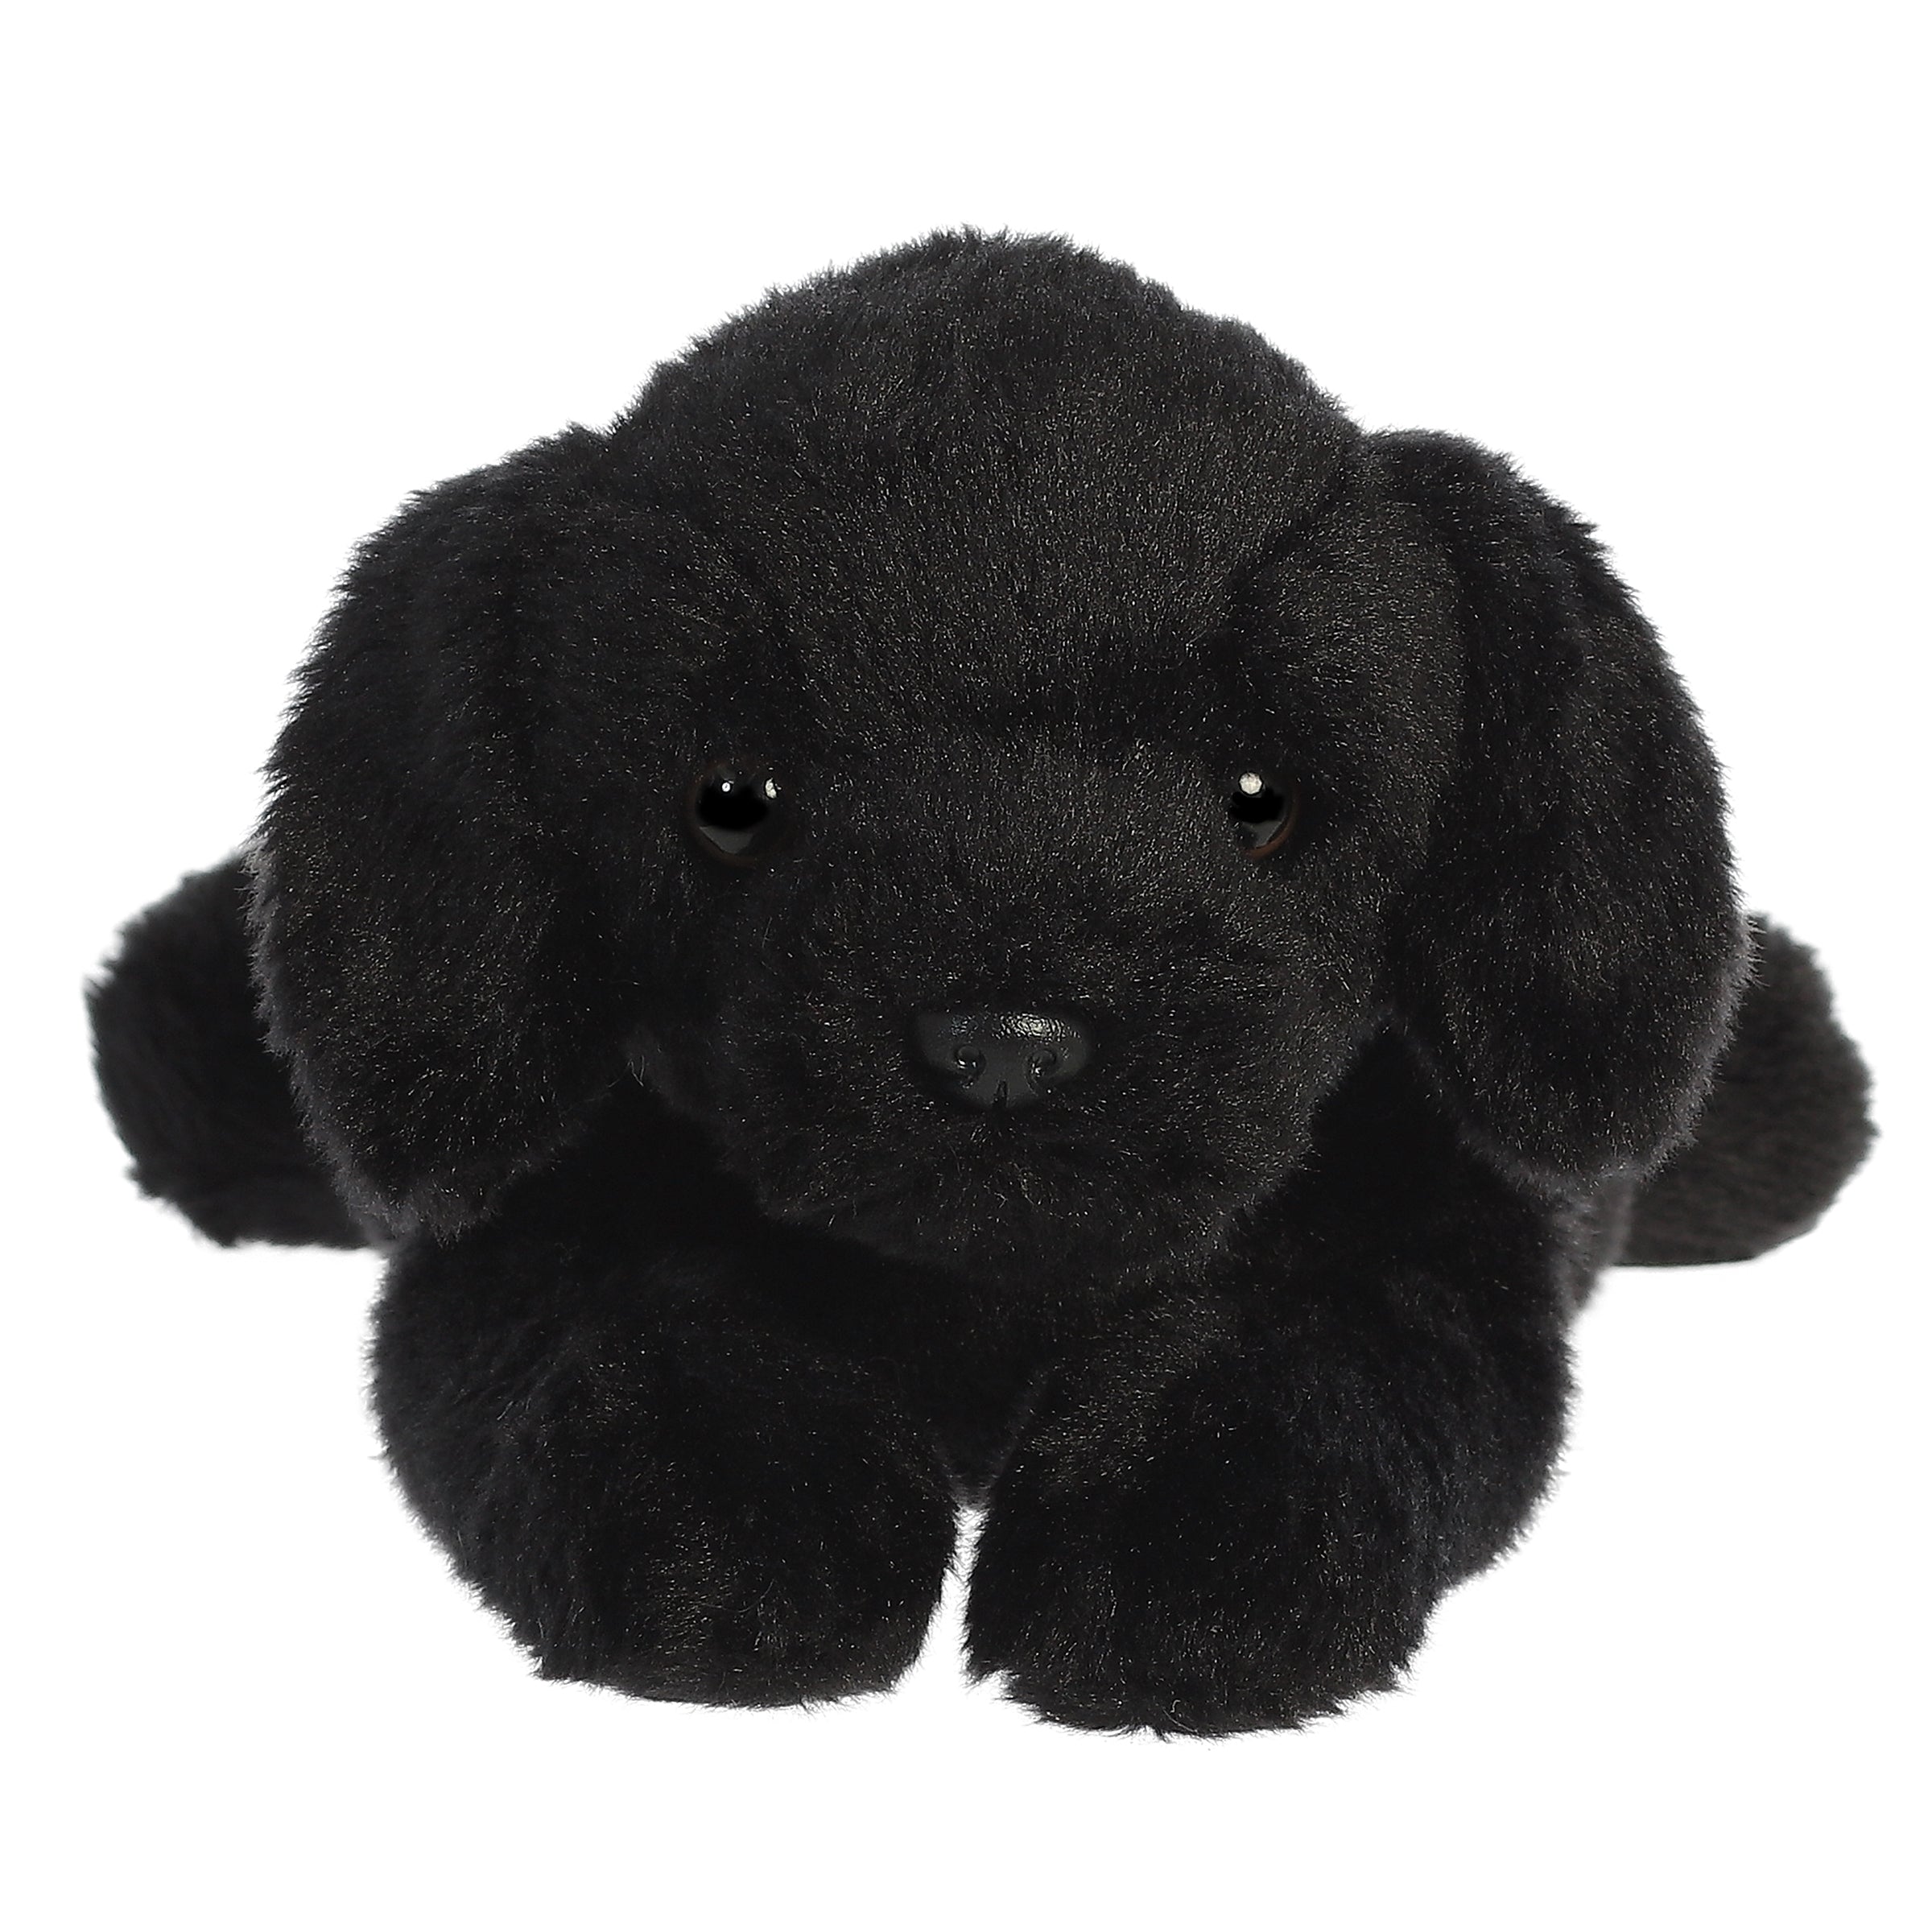 Aurora® - Flopsie™ - 12" Black Labrador